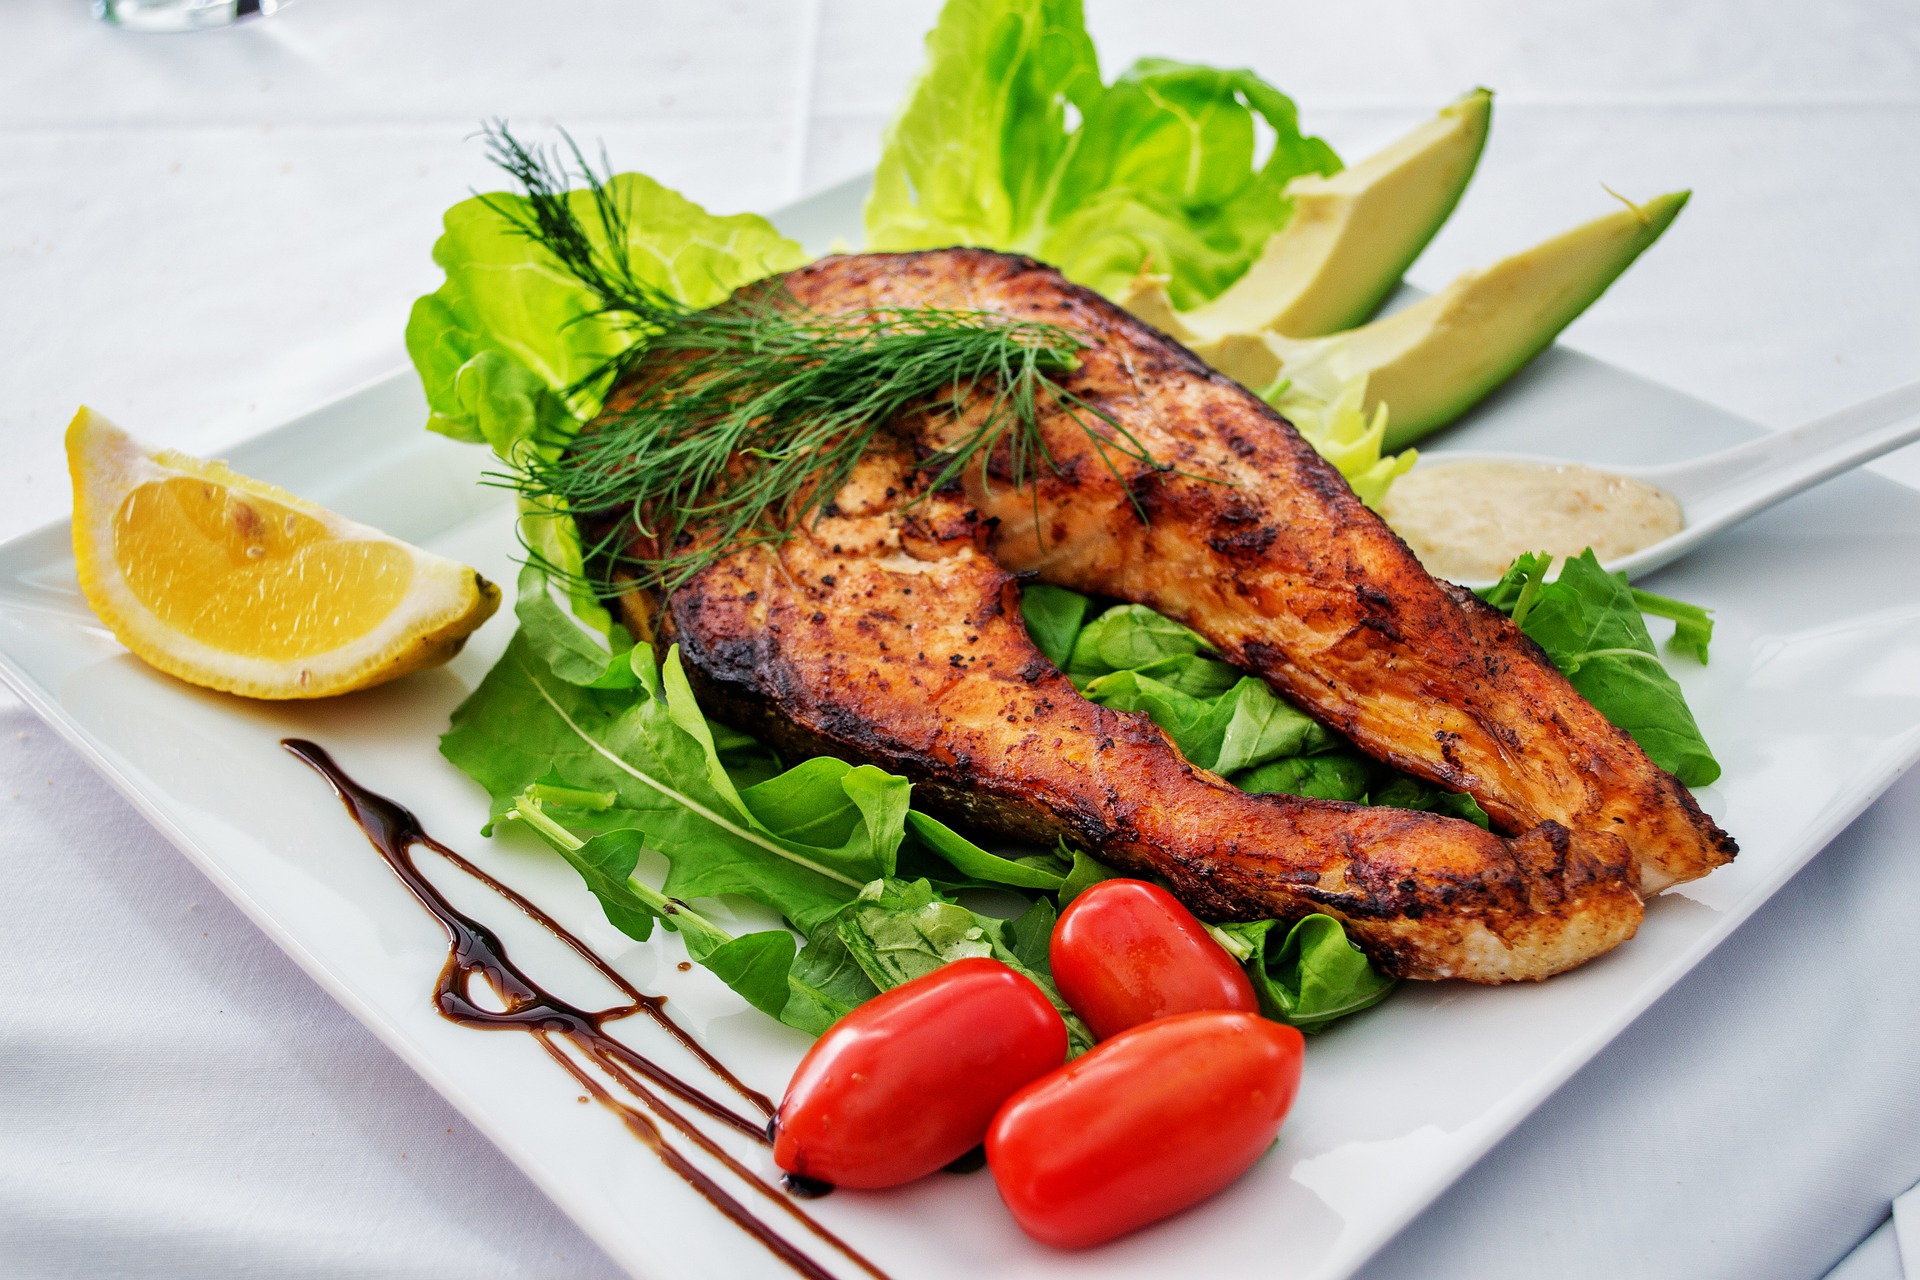 Ujistěte se, že každé jídlo obsahuje bílkoviny a zeleninu / foto: pixabay.com